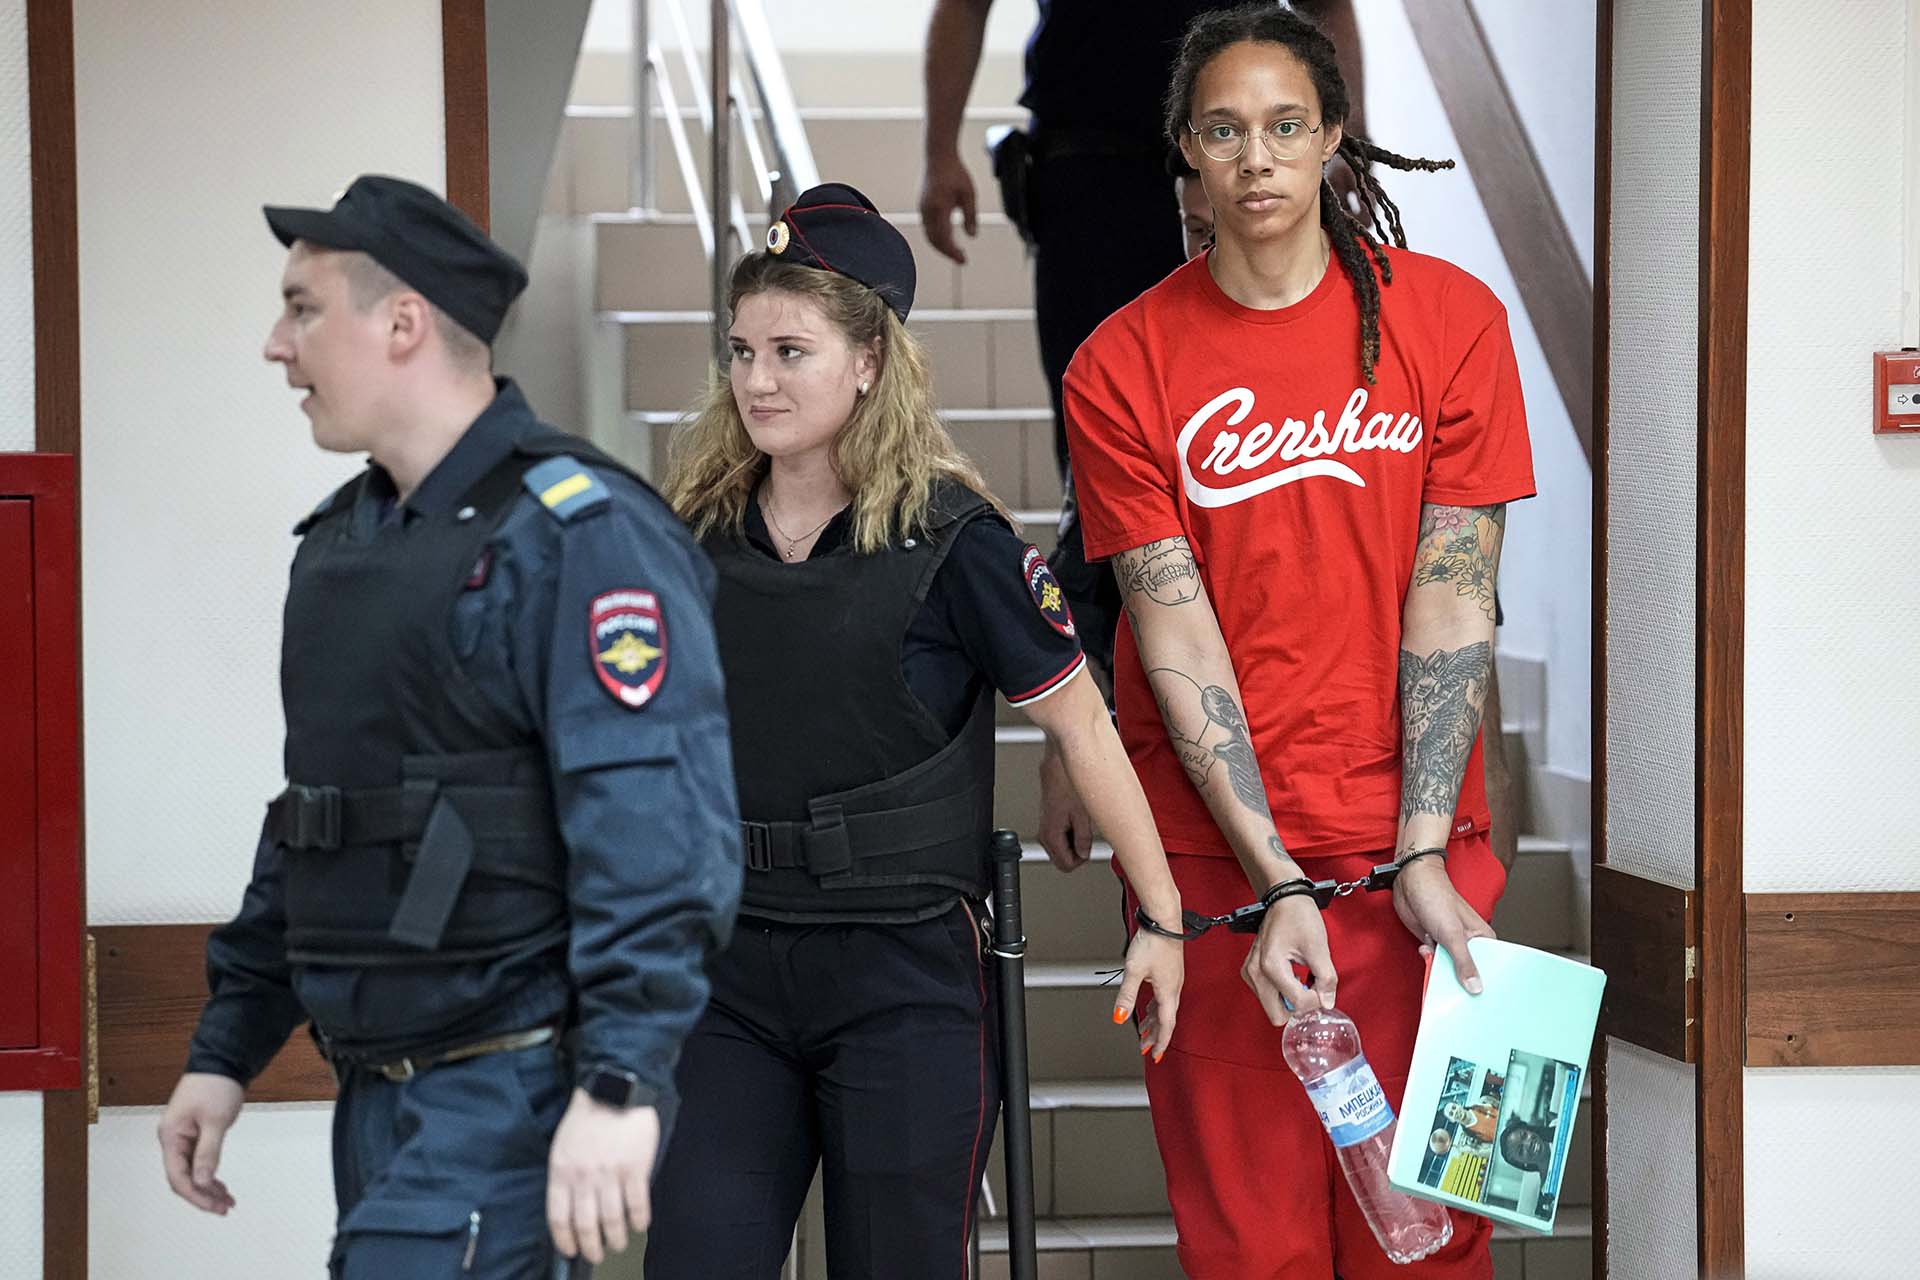 La jugadora de baquet y dos veces medallista olímpica Brittney Griner es liberada luego de pasar 10 meses en una cárcel rusa acusada de tráfico de drogas en un intercambio de prisioneros por el traficante de armas Viktor Bout. 